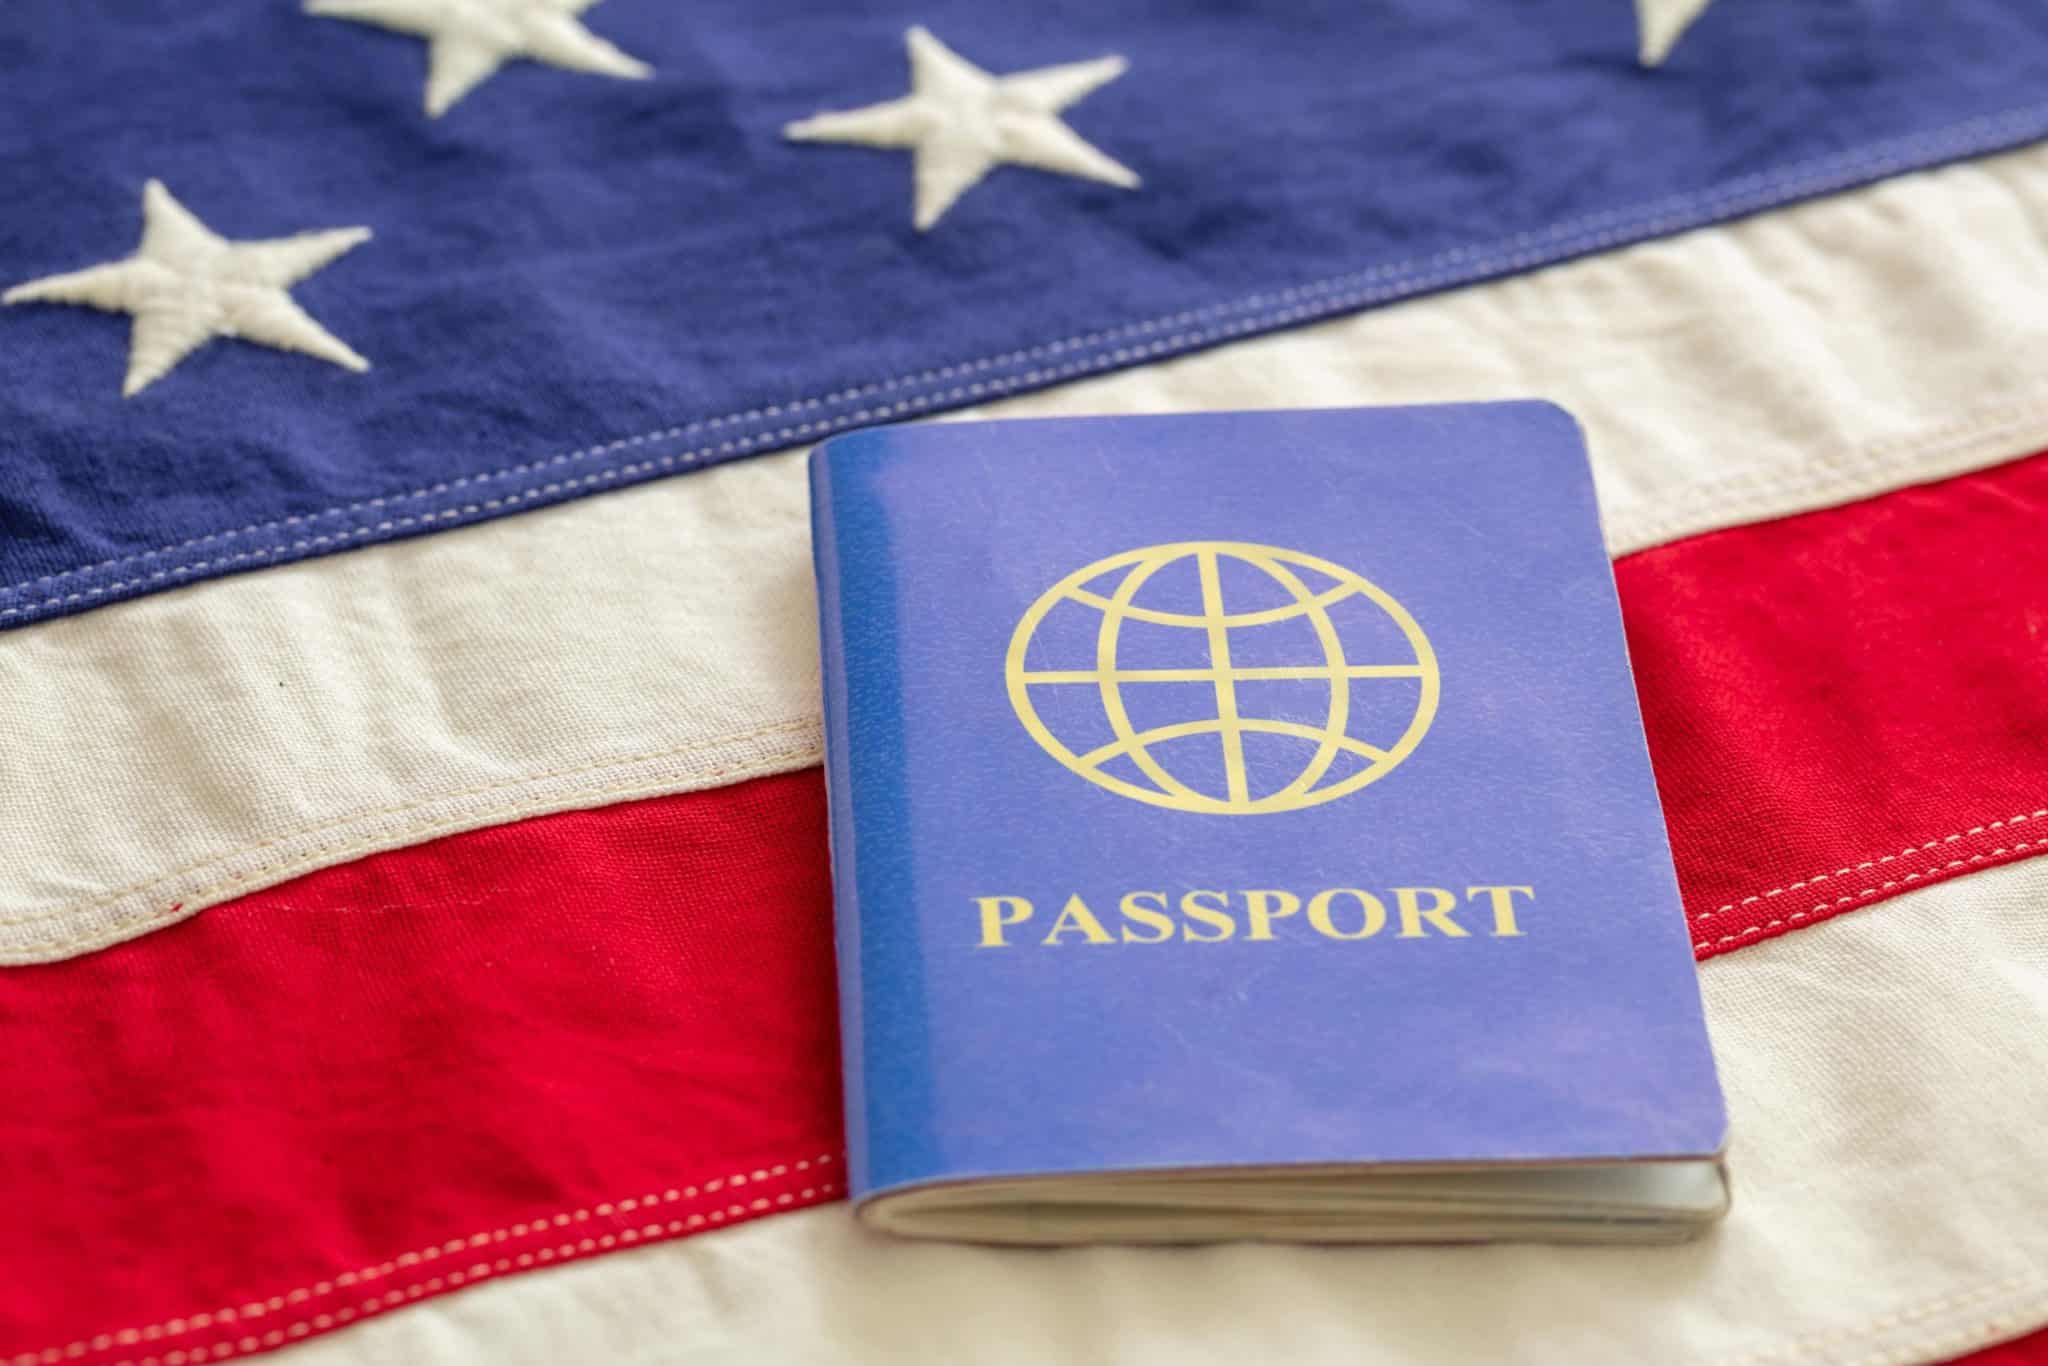 J-1 Visa Document and Passport